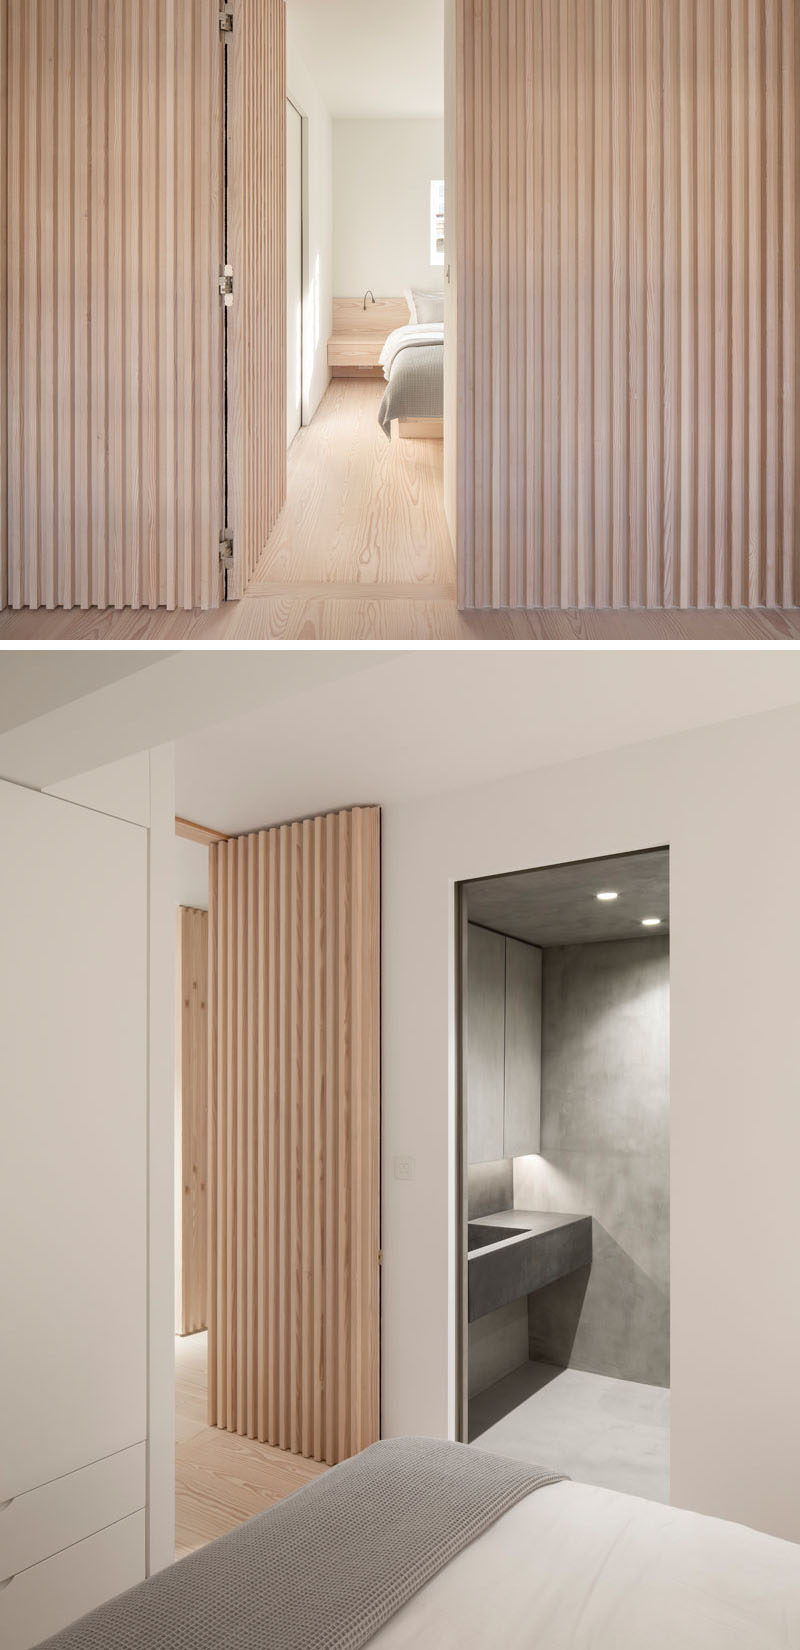 Wood Slat Wall Bedroom Secret Doors 120719 1107 05 800x1650 